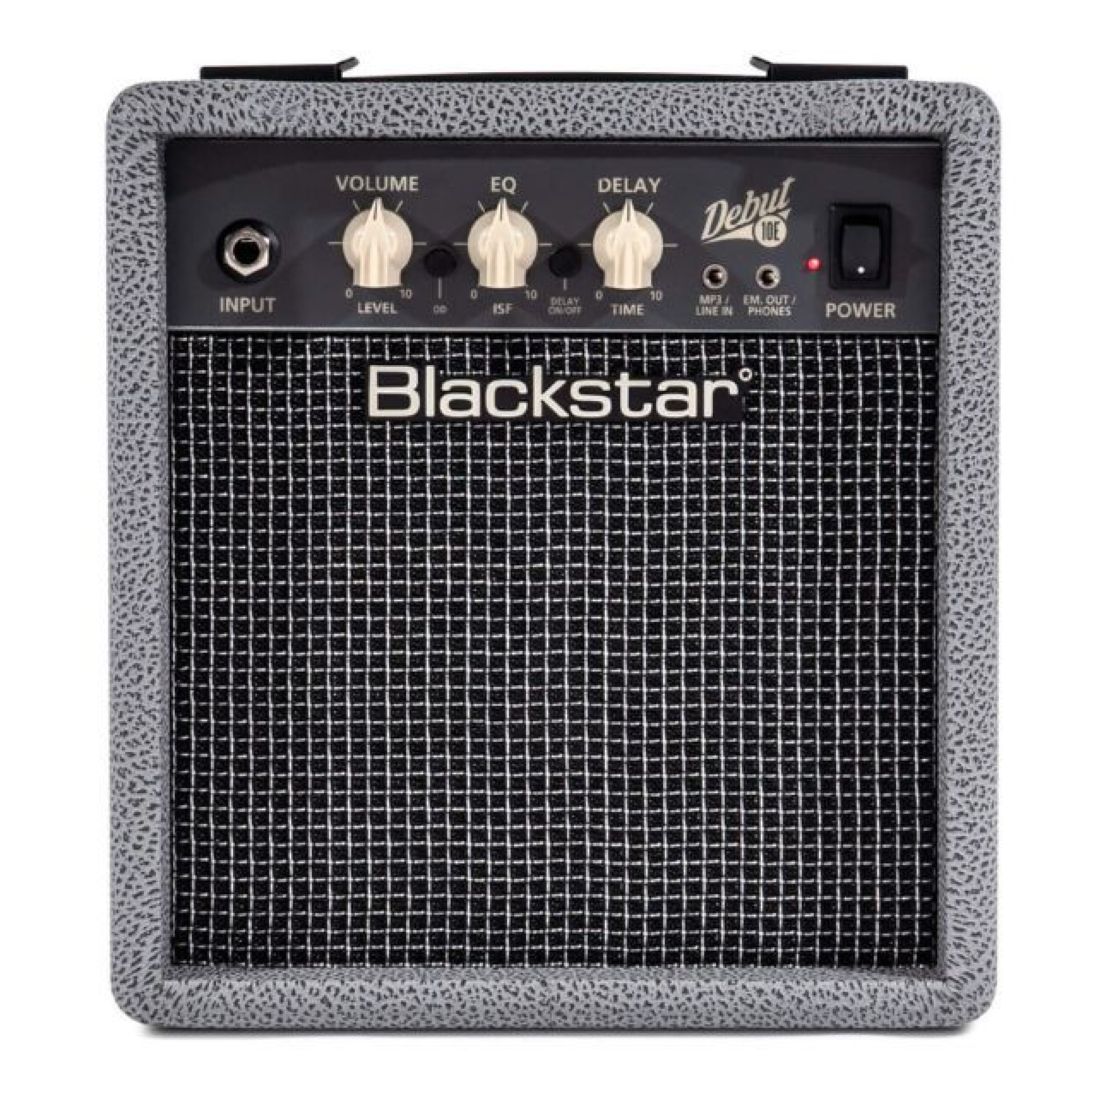 Blackstar Debut-10E Stereo Practice Guitar Amplifier - Bronco Grey